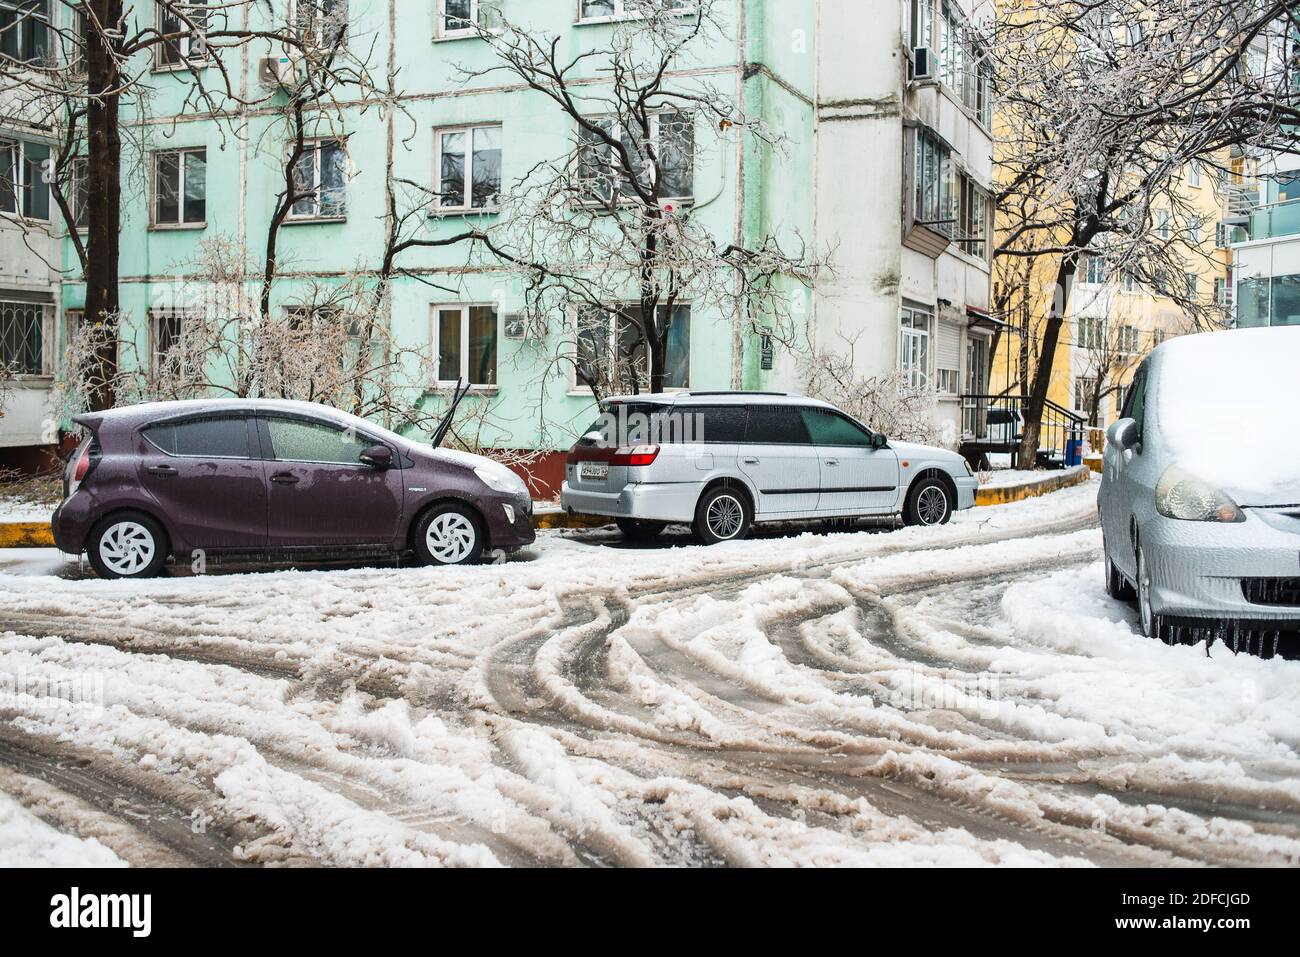 Spuren von den Rädern von Autos auf einer nassen verschneiten Straße. Auto bedeckt mit Eis, Schnee und Eiszapfen. Eissturmzyklon. Frostige Szenen im Winter. Stockfoto